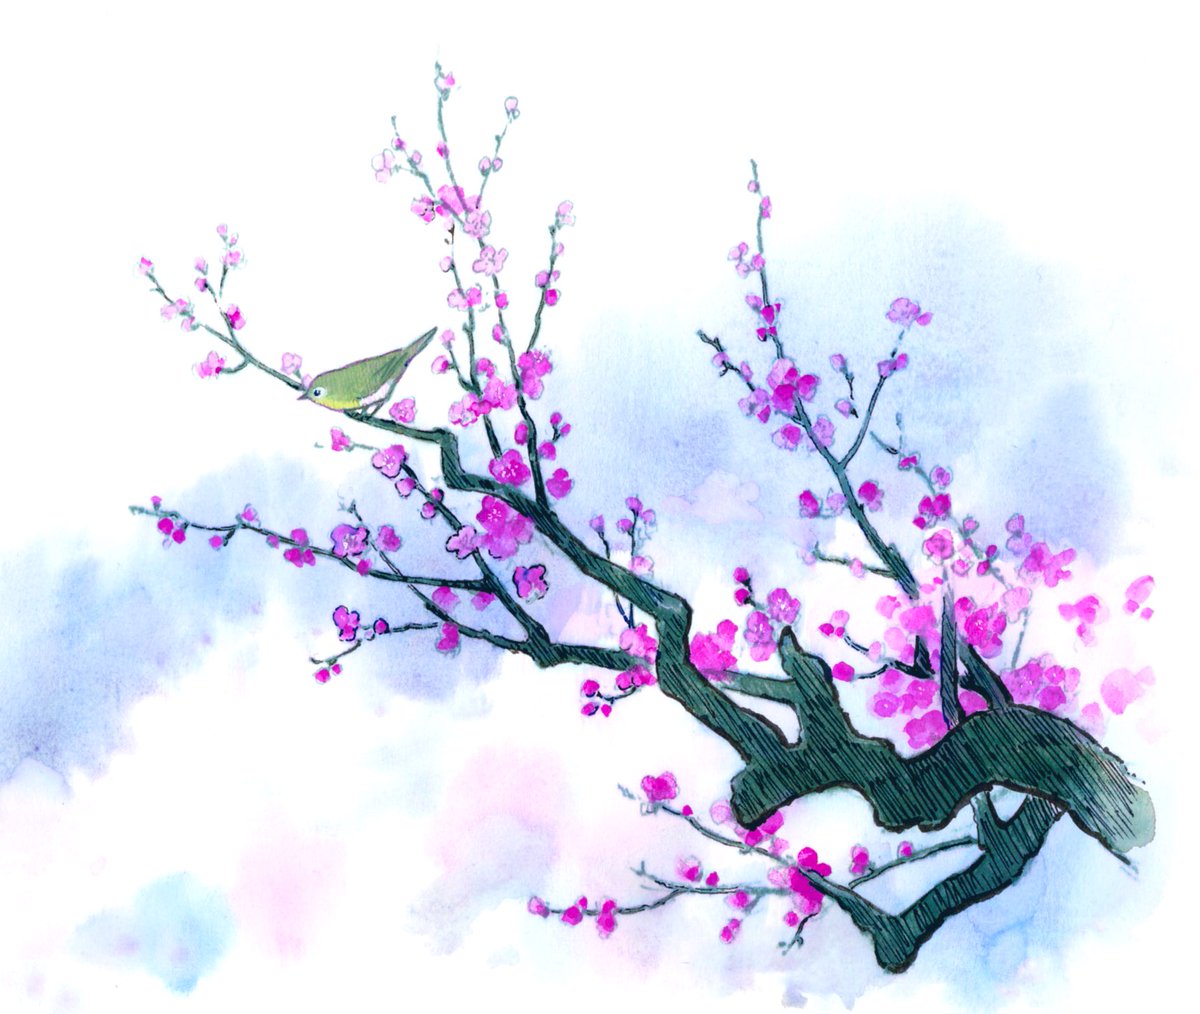 「早春の香り小梅キャンディ食べたい眠い( ˘ω˘ ) 」|だまち(さめしまきよし)のイラスト